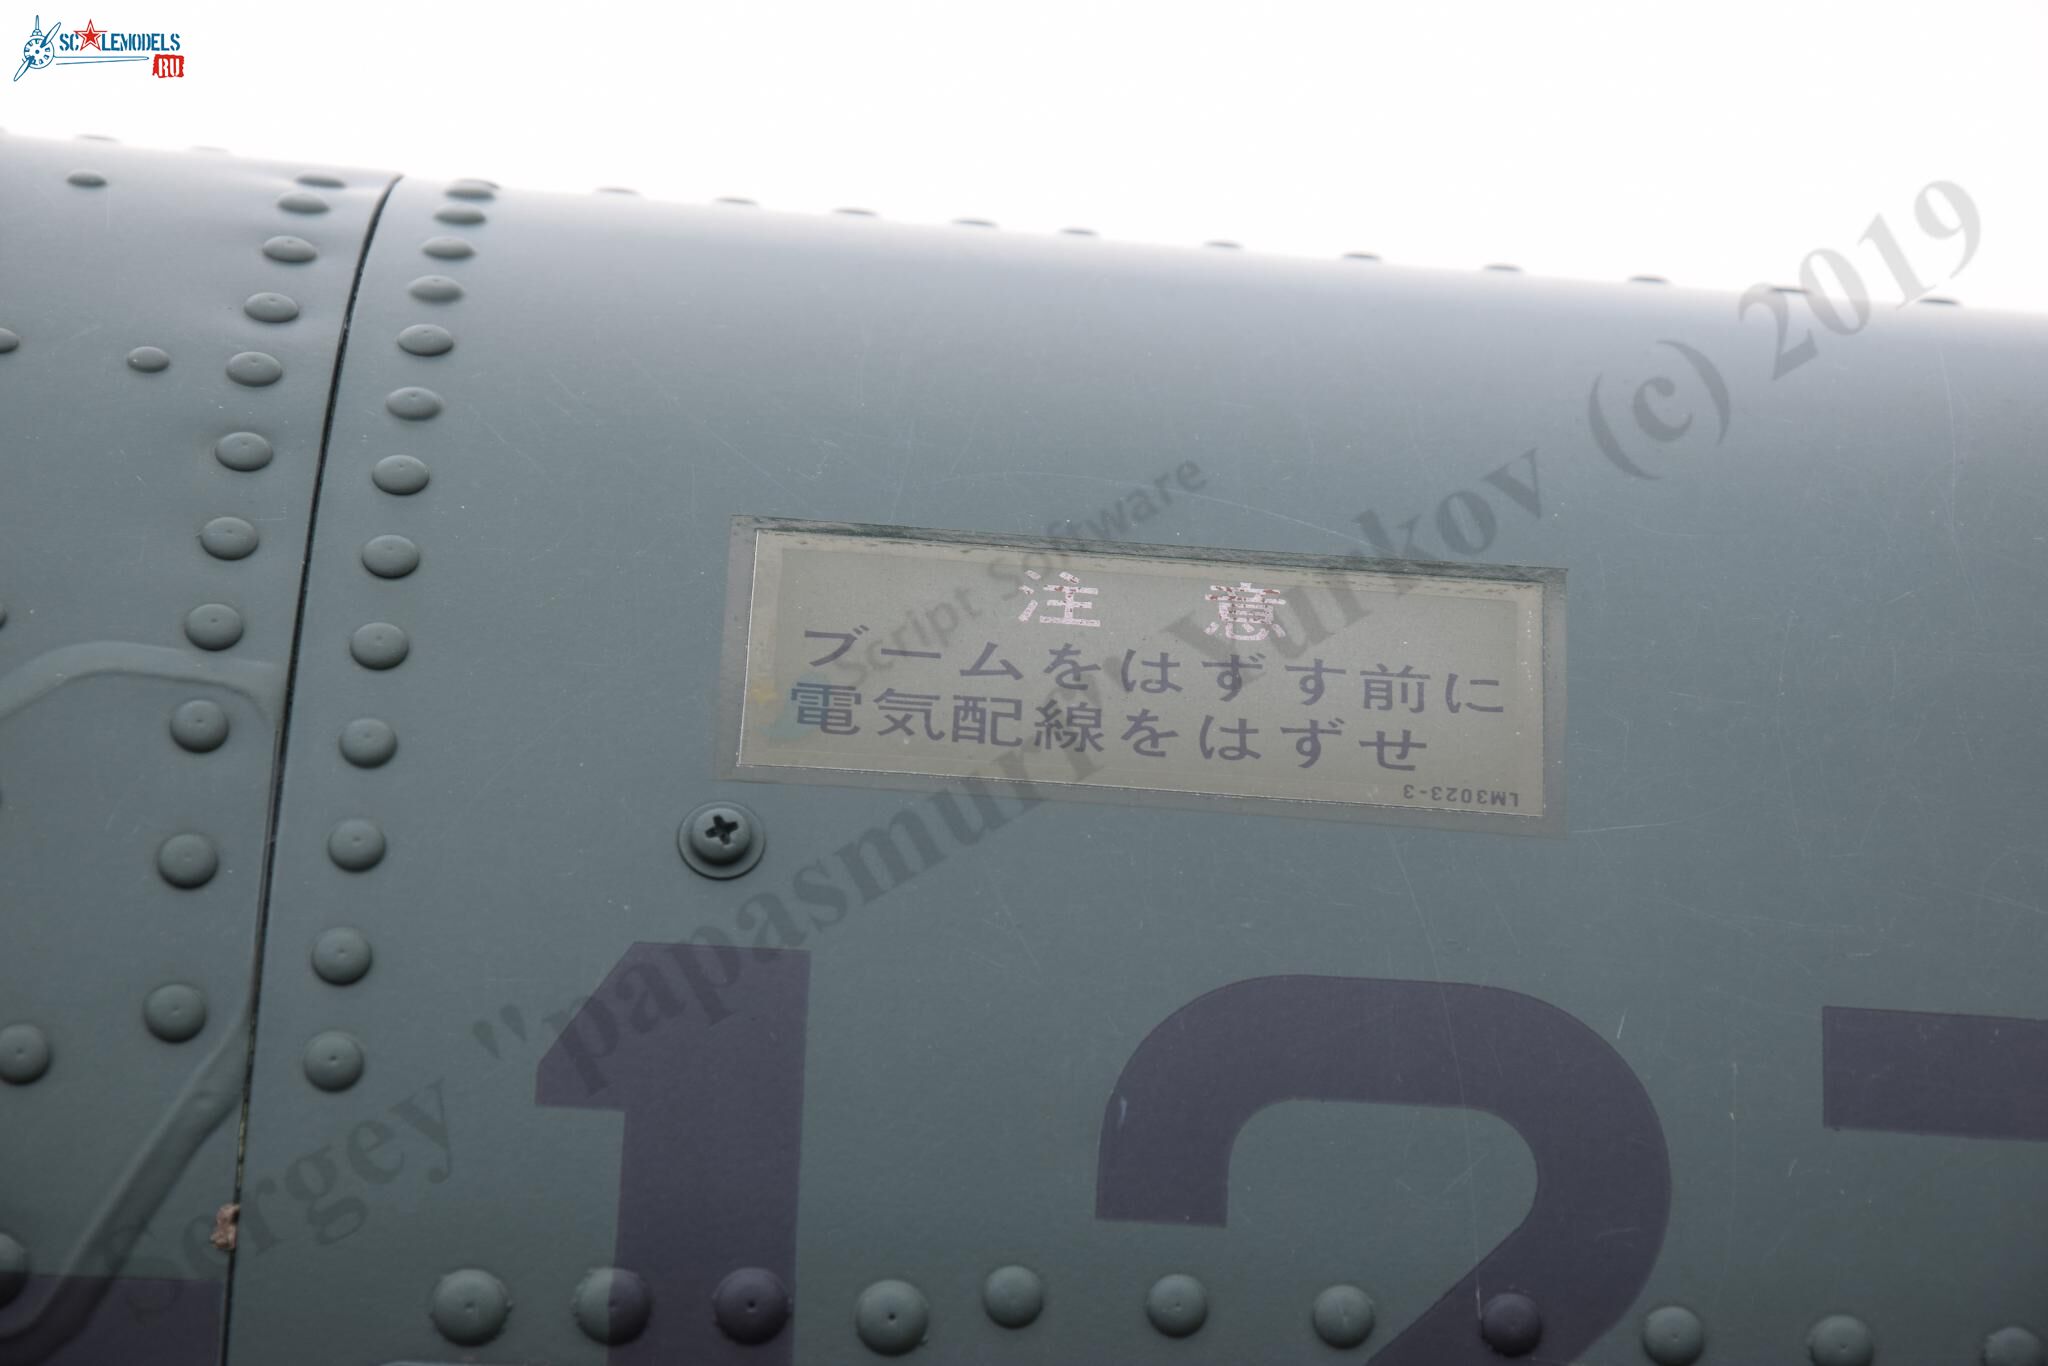 OH-6D_JD-1270_Misawa_144.jpg